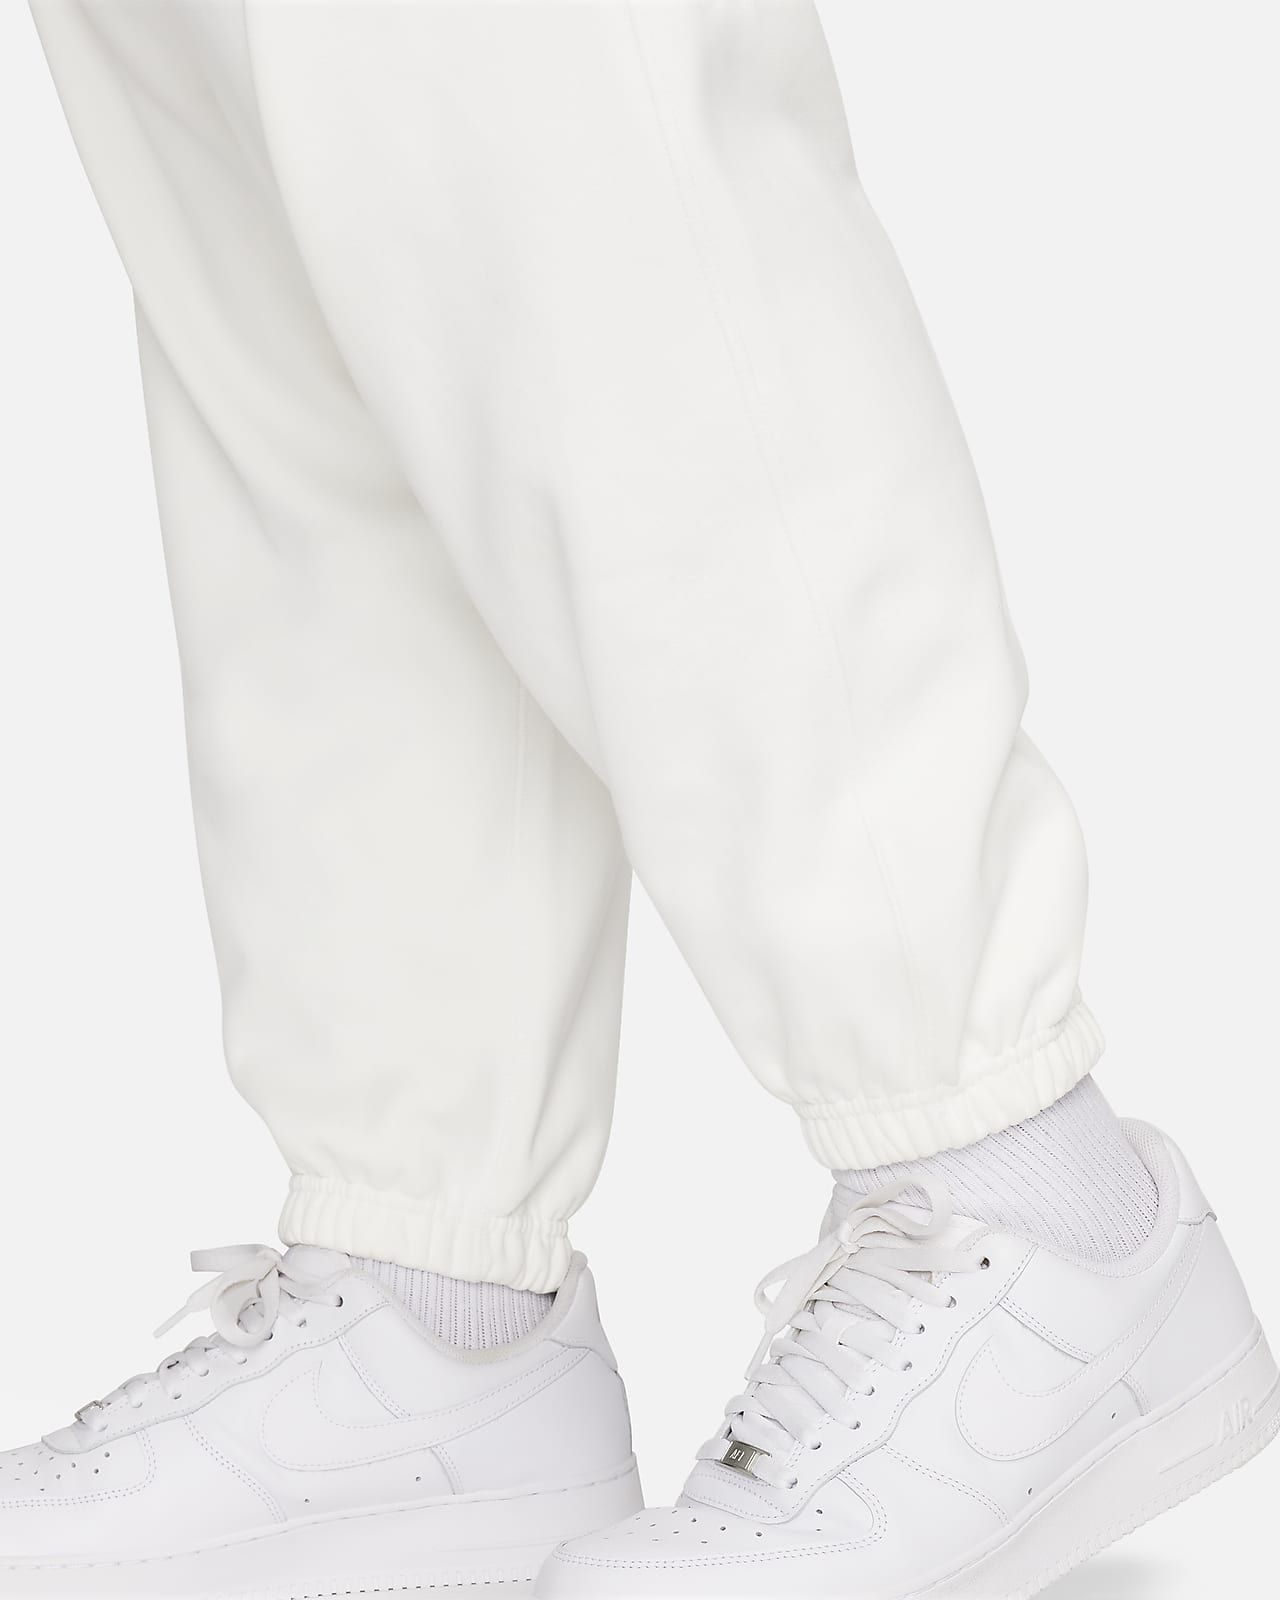 Nike Solo Swoosh Men's Fleece Grey Pants